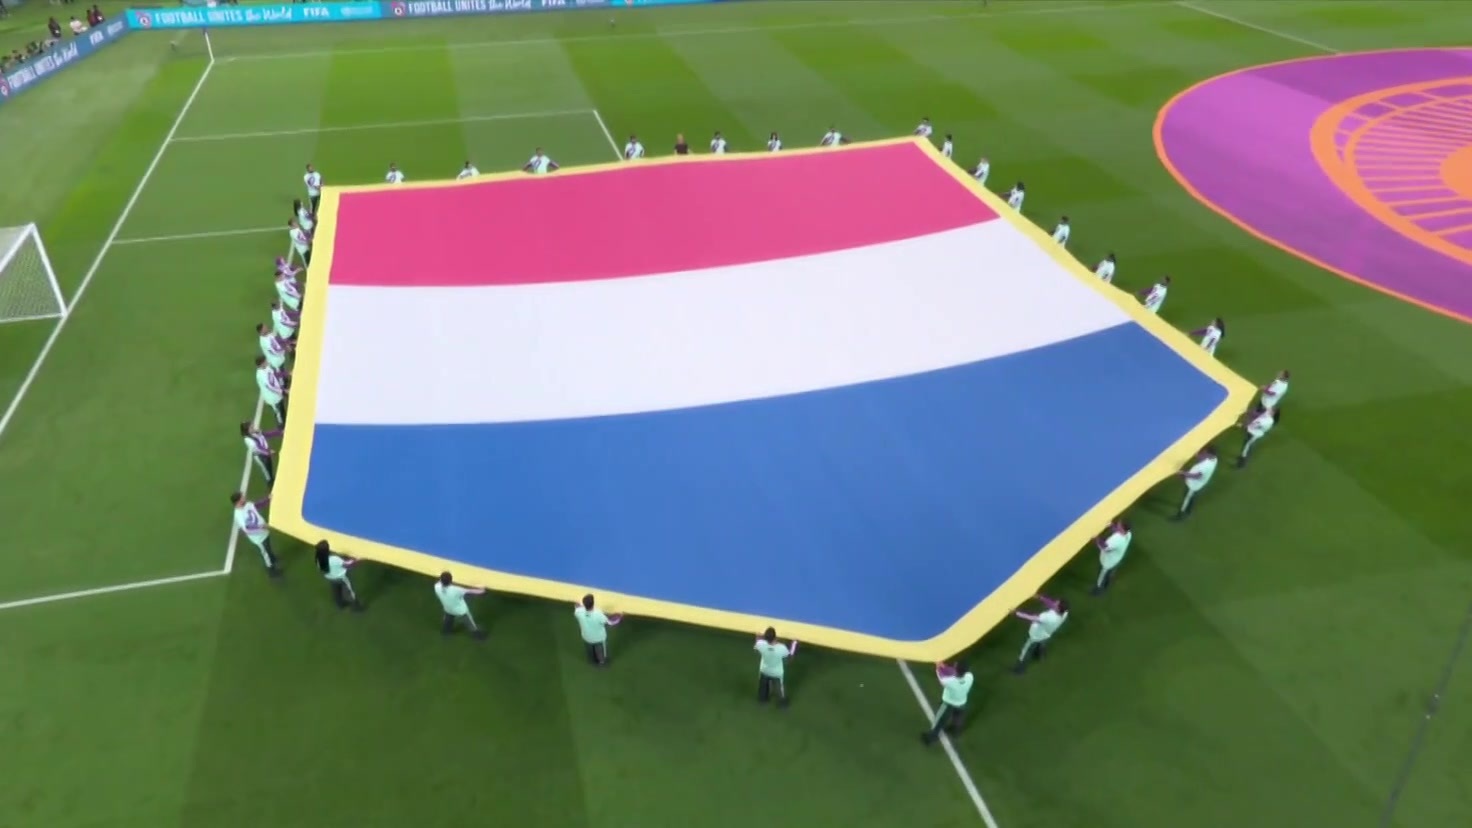 16 NETHERLAND